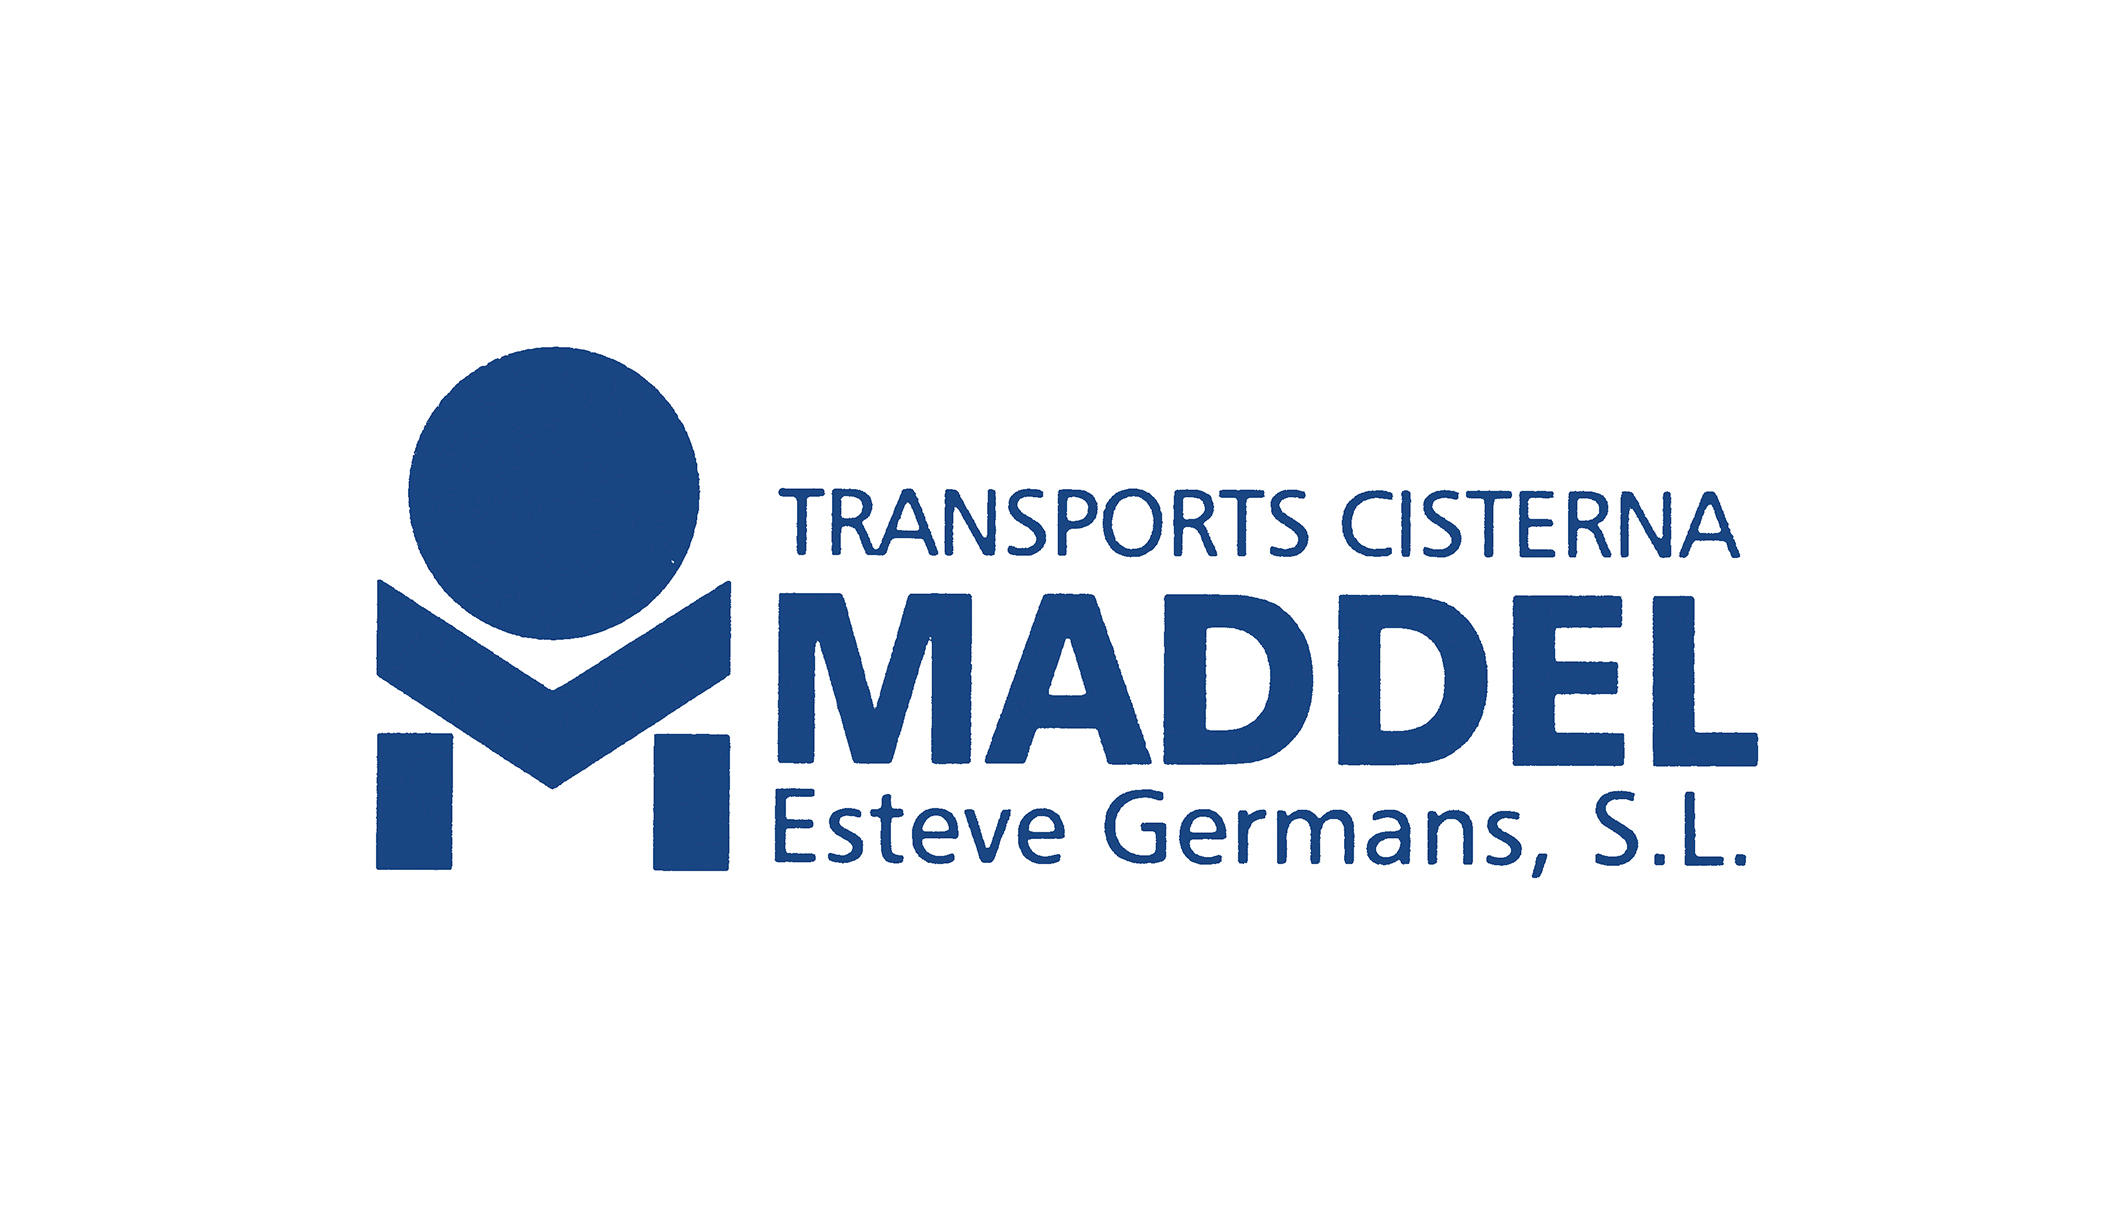 Images Maddel Transports